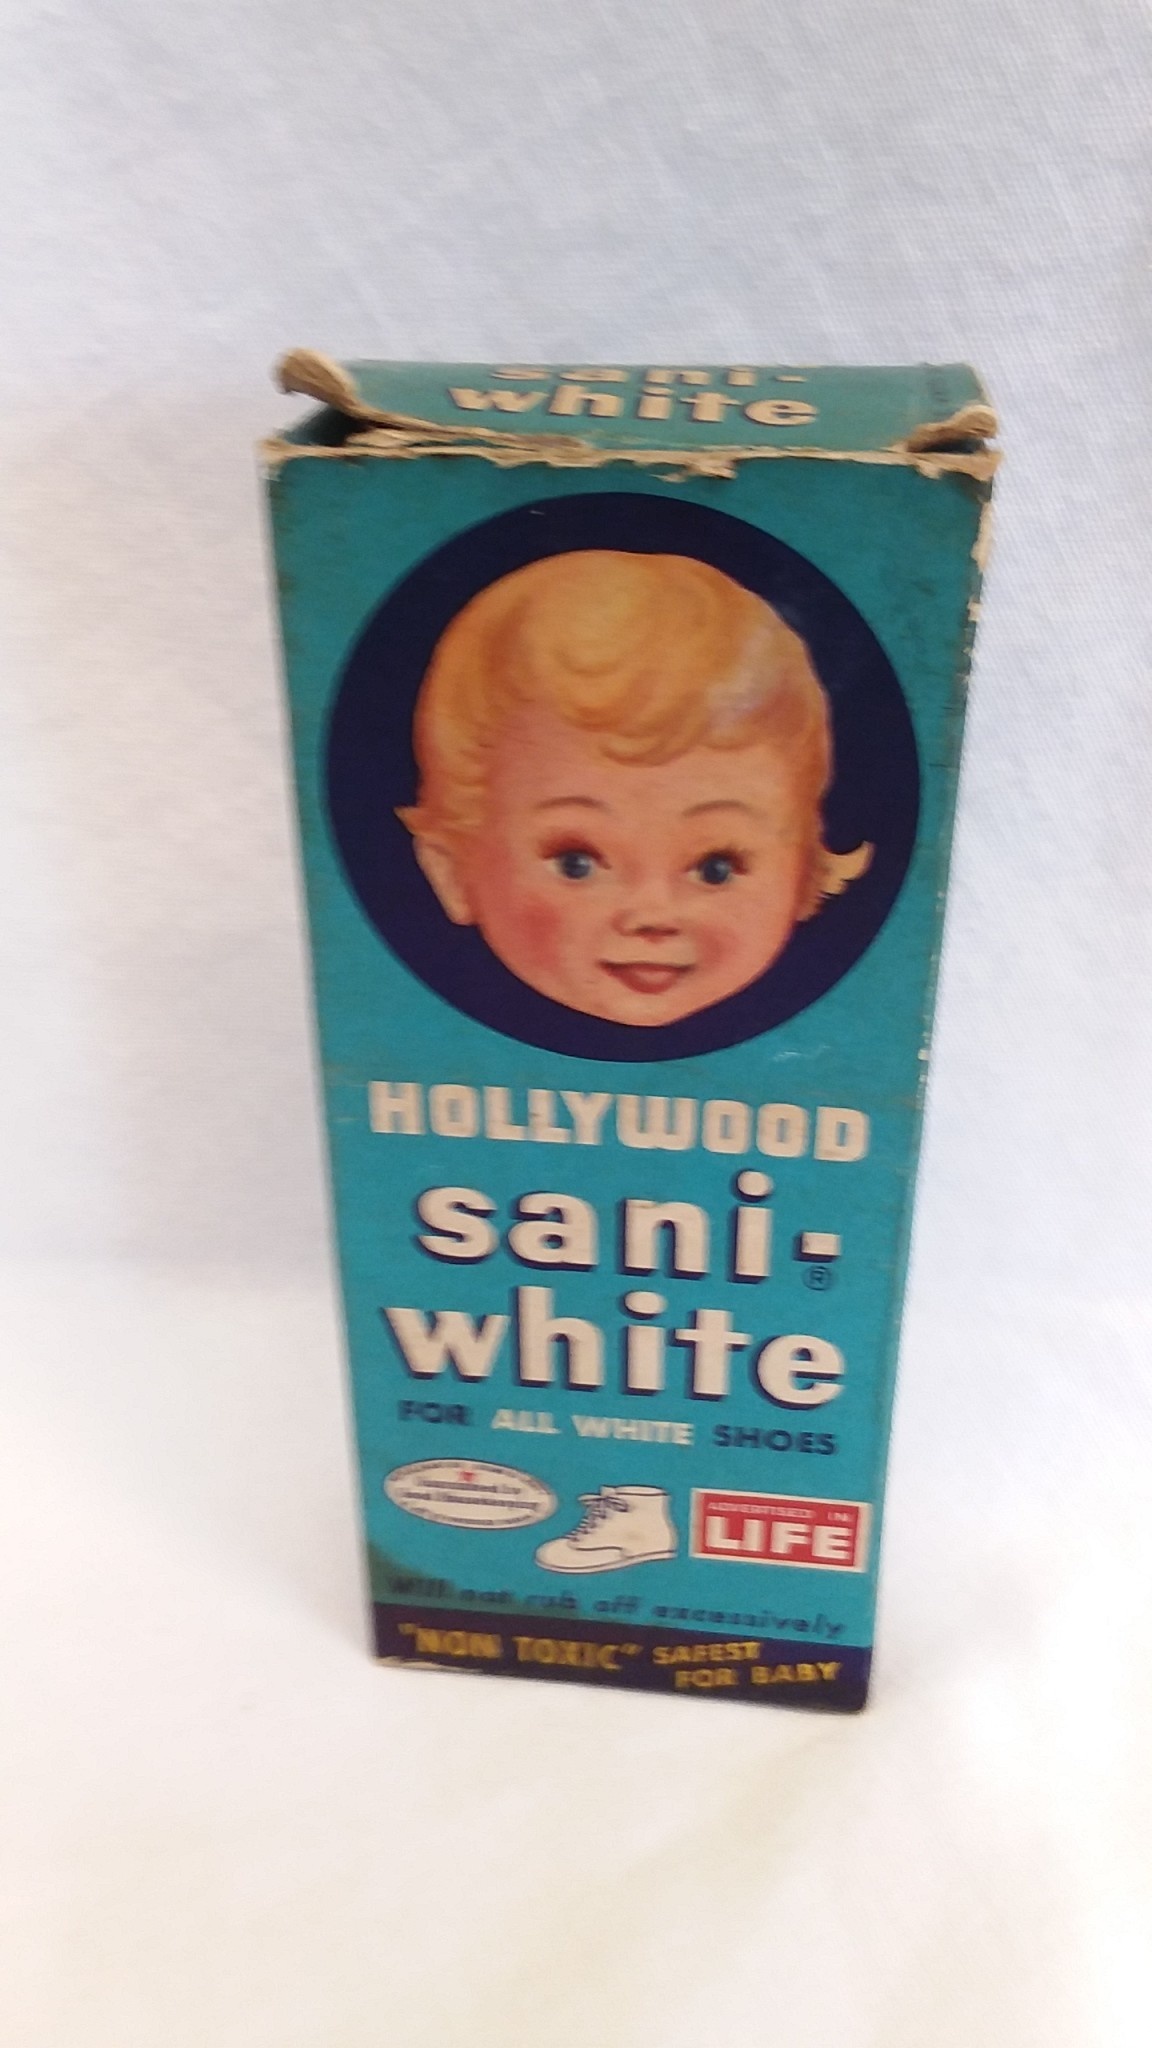 Sani-White Shoe Polish - The Second 